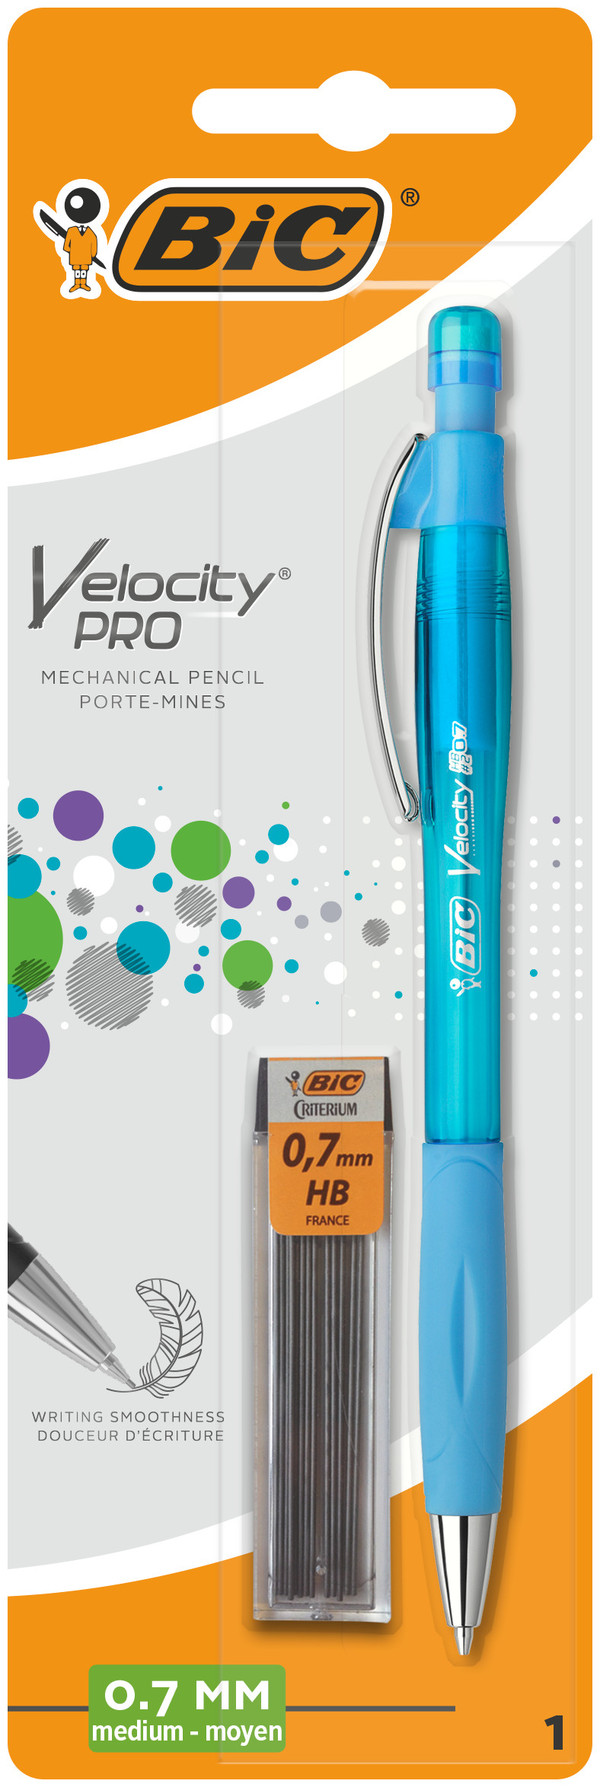 Ołówek z gumką bic velocity pro 0.7mm mmp + rysiki 1 szt. mix. blister